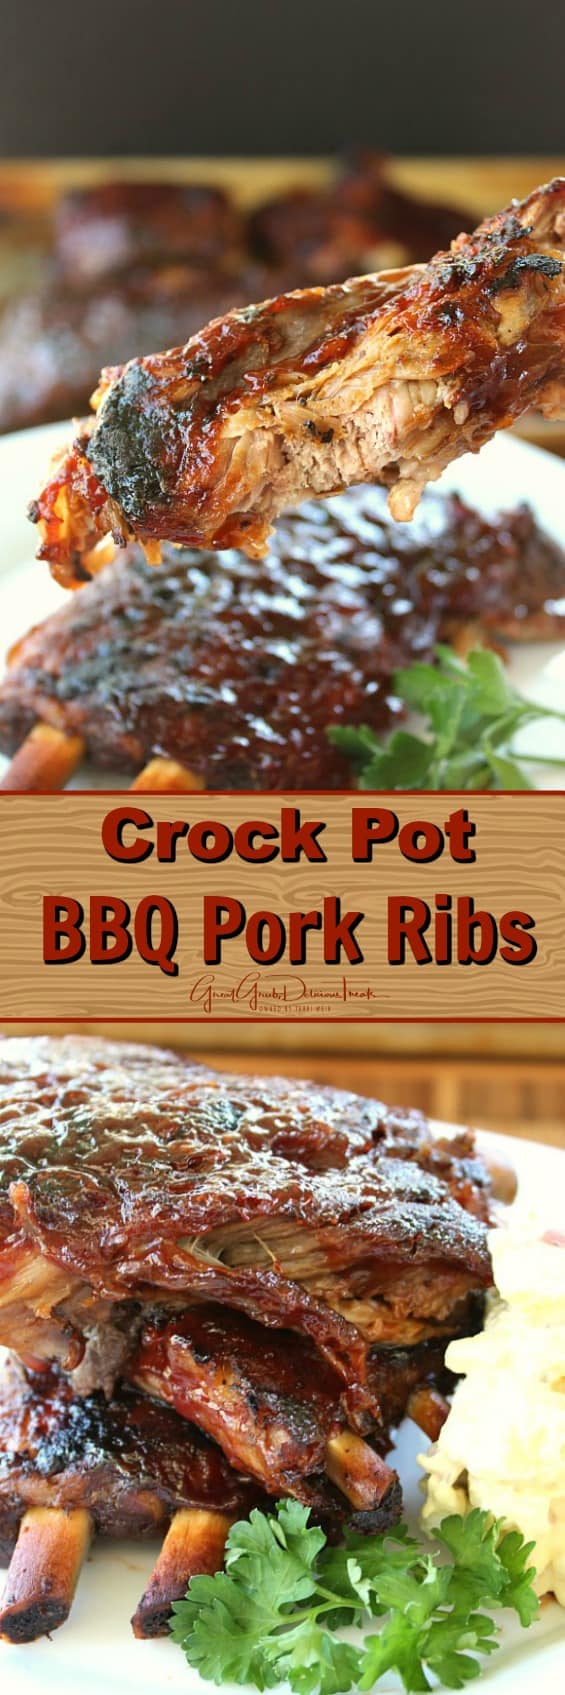 Crock Pot BBQ Pork Ribs